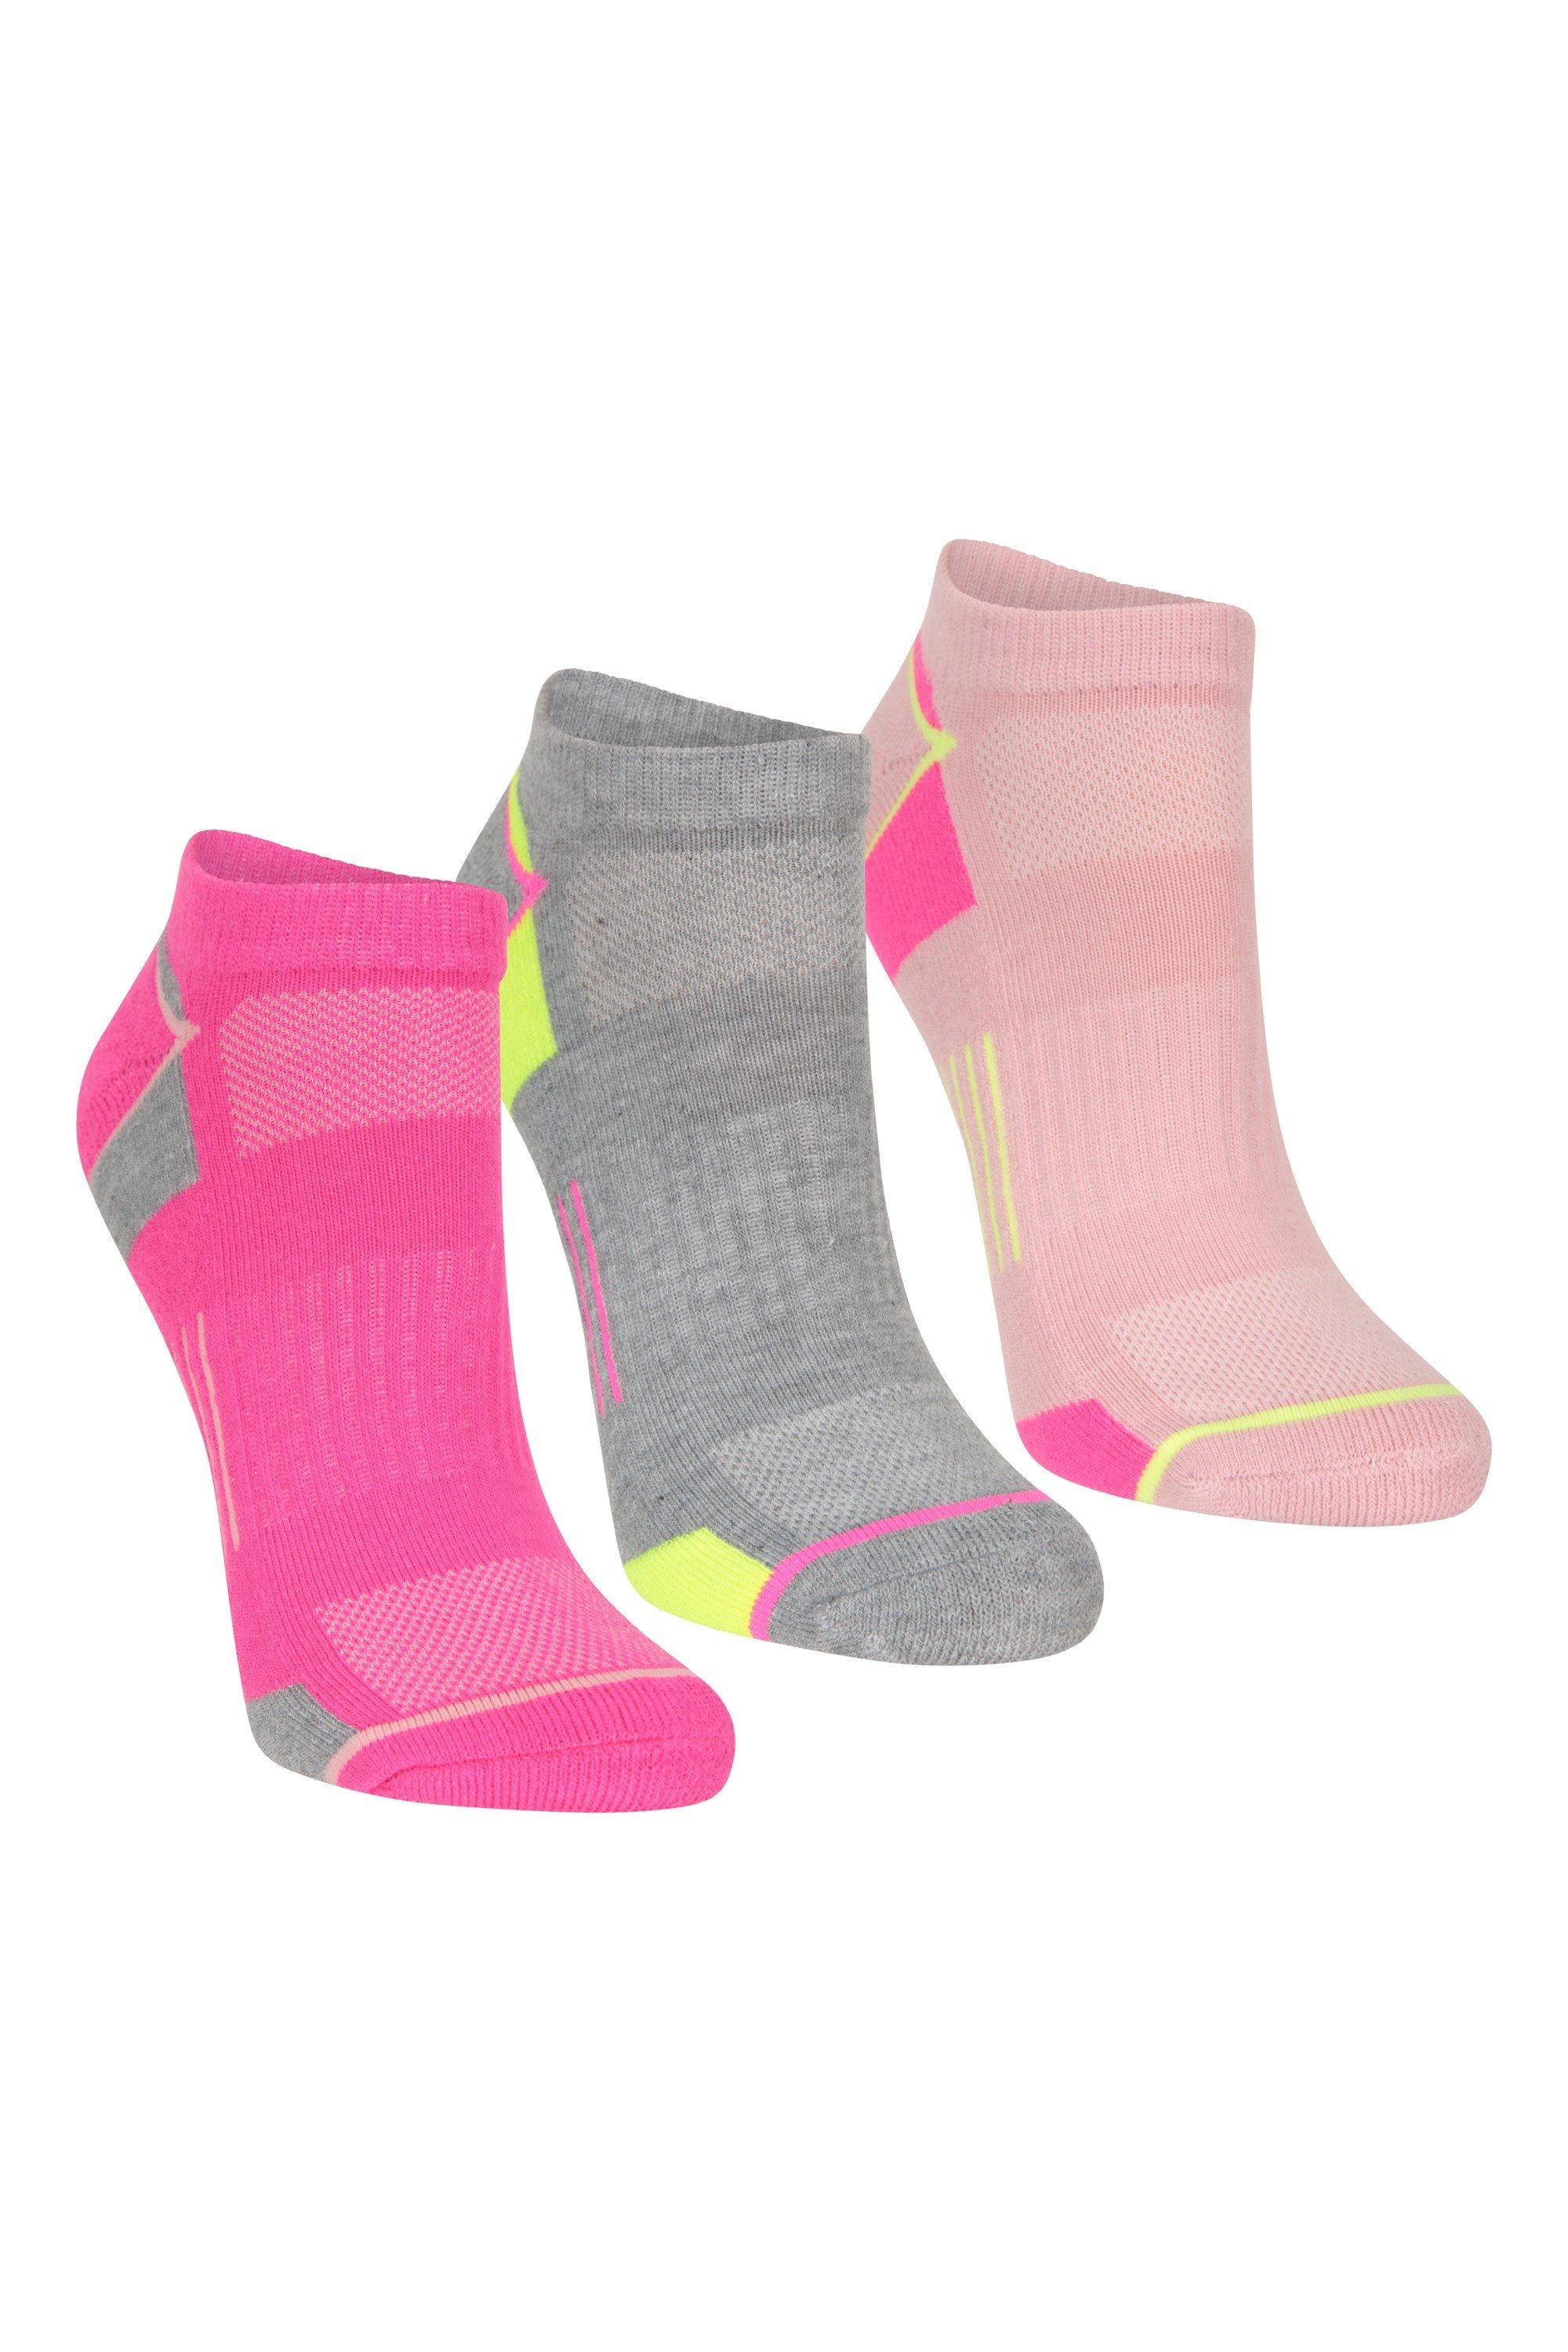 MRULIC socks for women Socks Fitness Elastic Zipper Kosovo